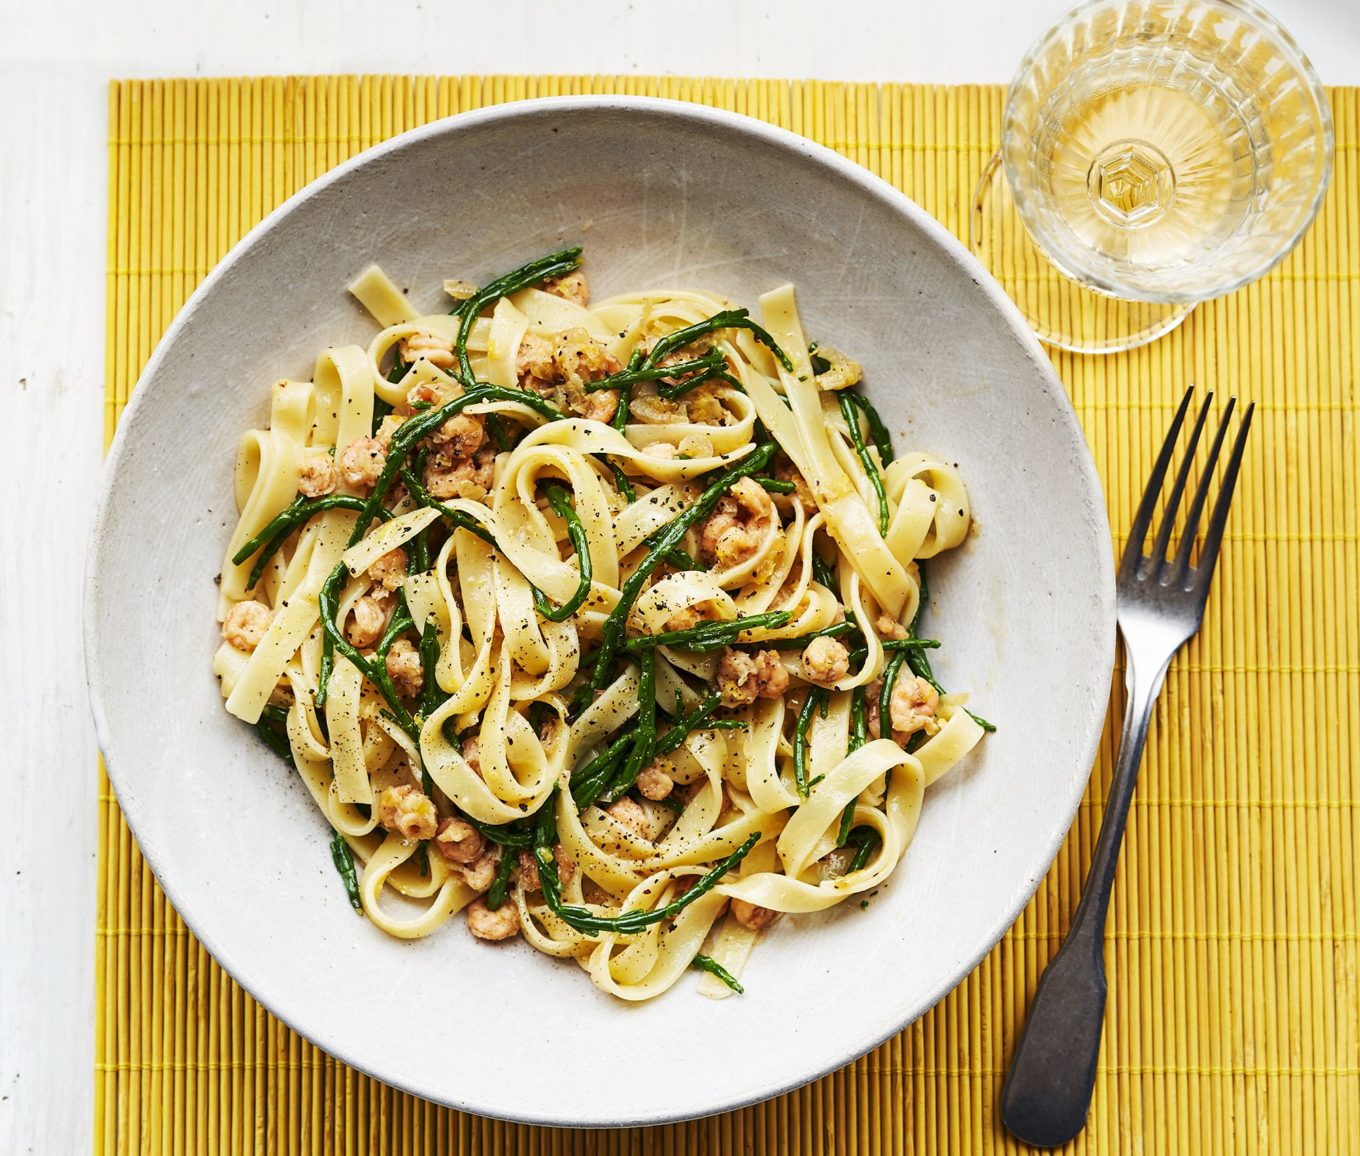 recept pasta scampi - recept pasta met garnalen - pasta scampi zeekraal - pasta garnalen zeekraal - pasta met vis - pasta garnalen - pasta scampi mosselen